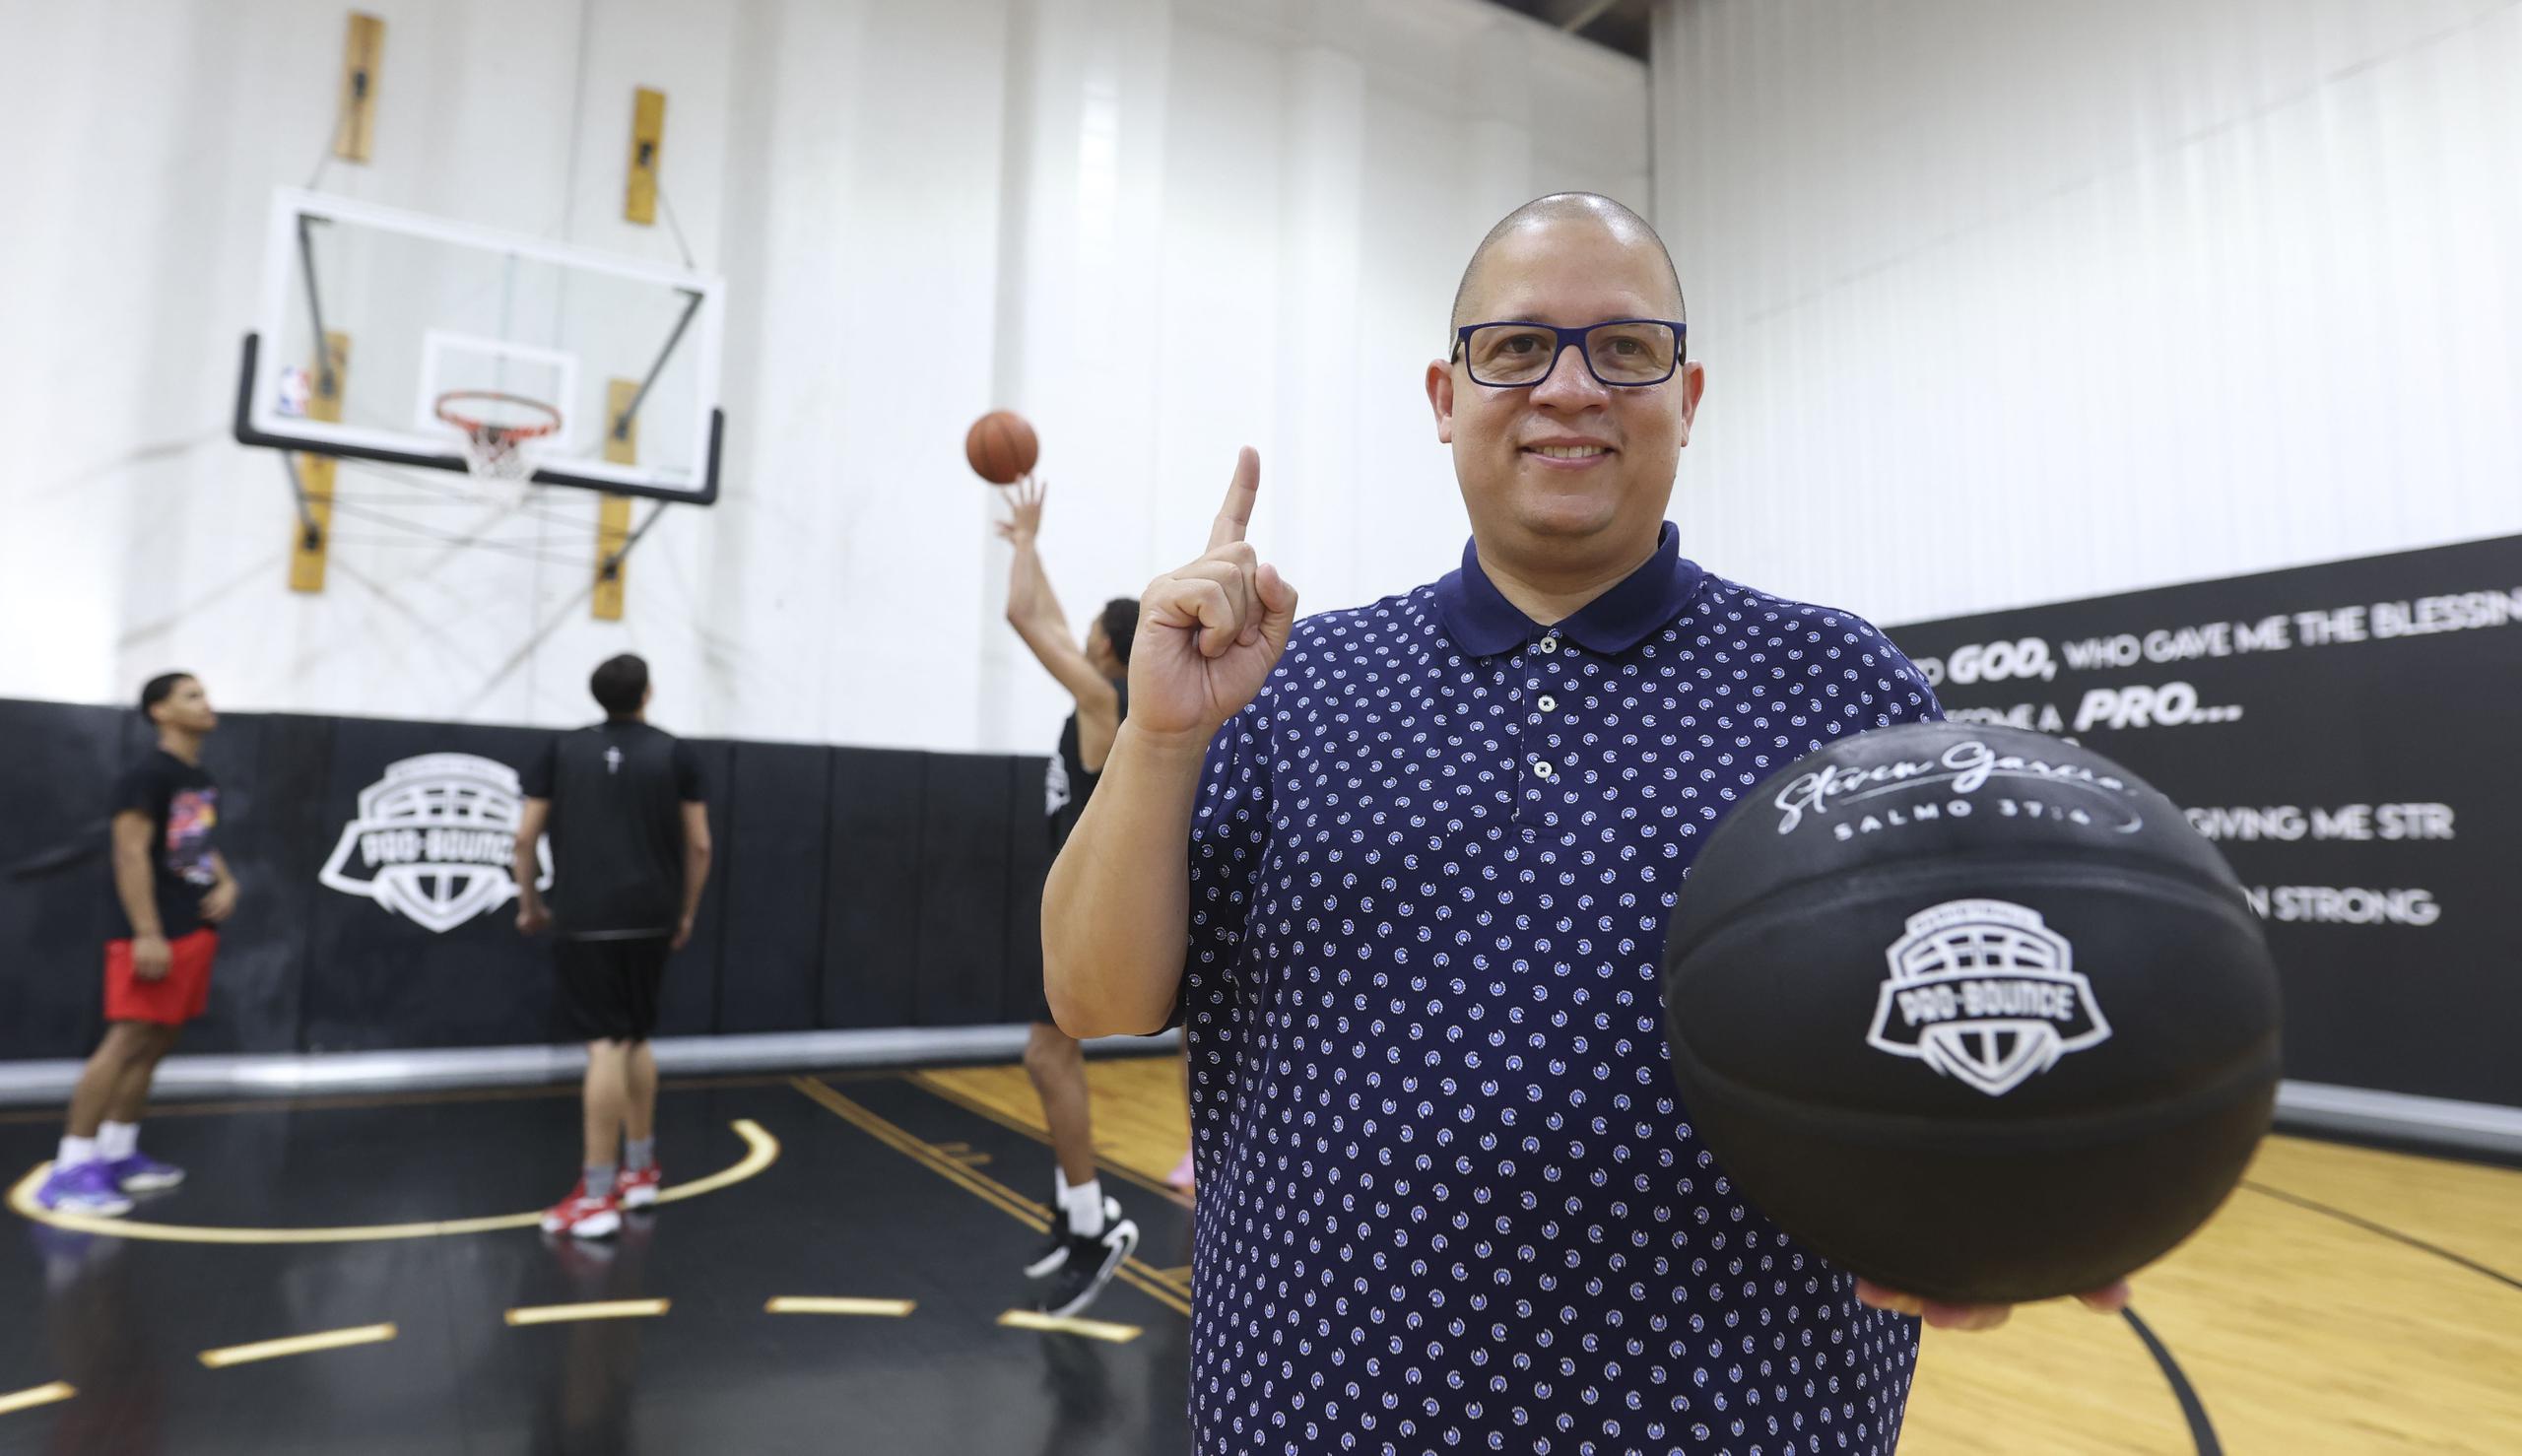 Héctor Delgado posa con un balón en el centro de entrenamiento de baloncesto ProBounce Academy en Carolina, donde los jóvenes que reclute para jugar baloncesto en la Jireh Basketball Academy entrenarán para pulir sus destrezas en el deporte.